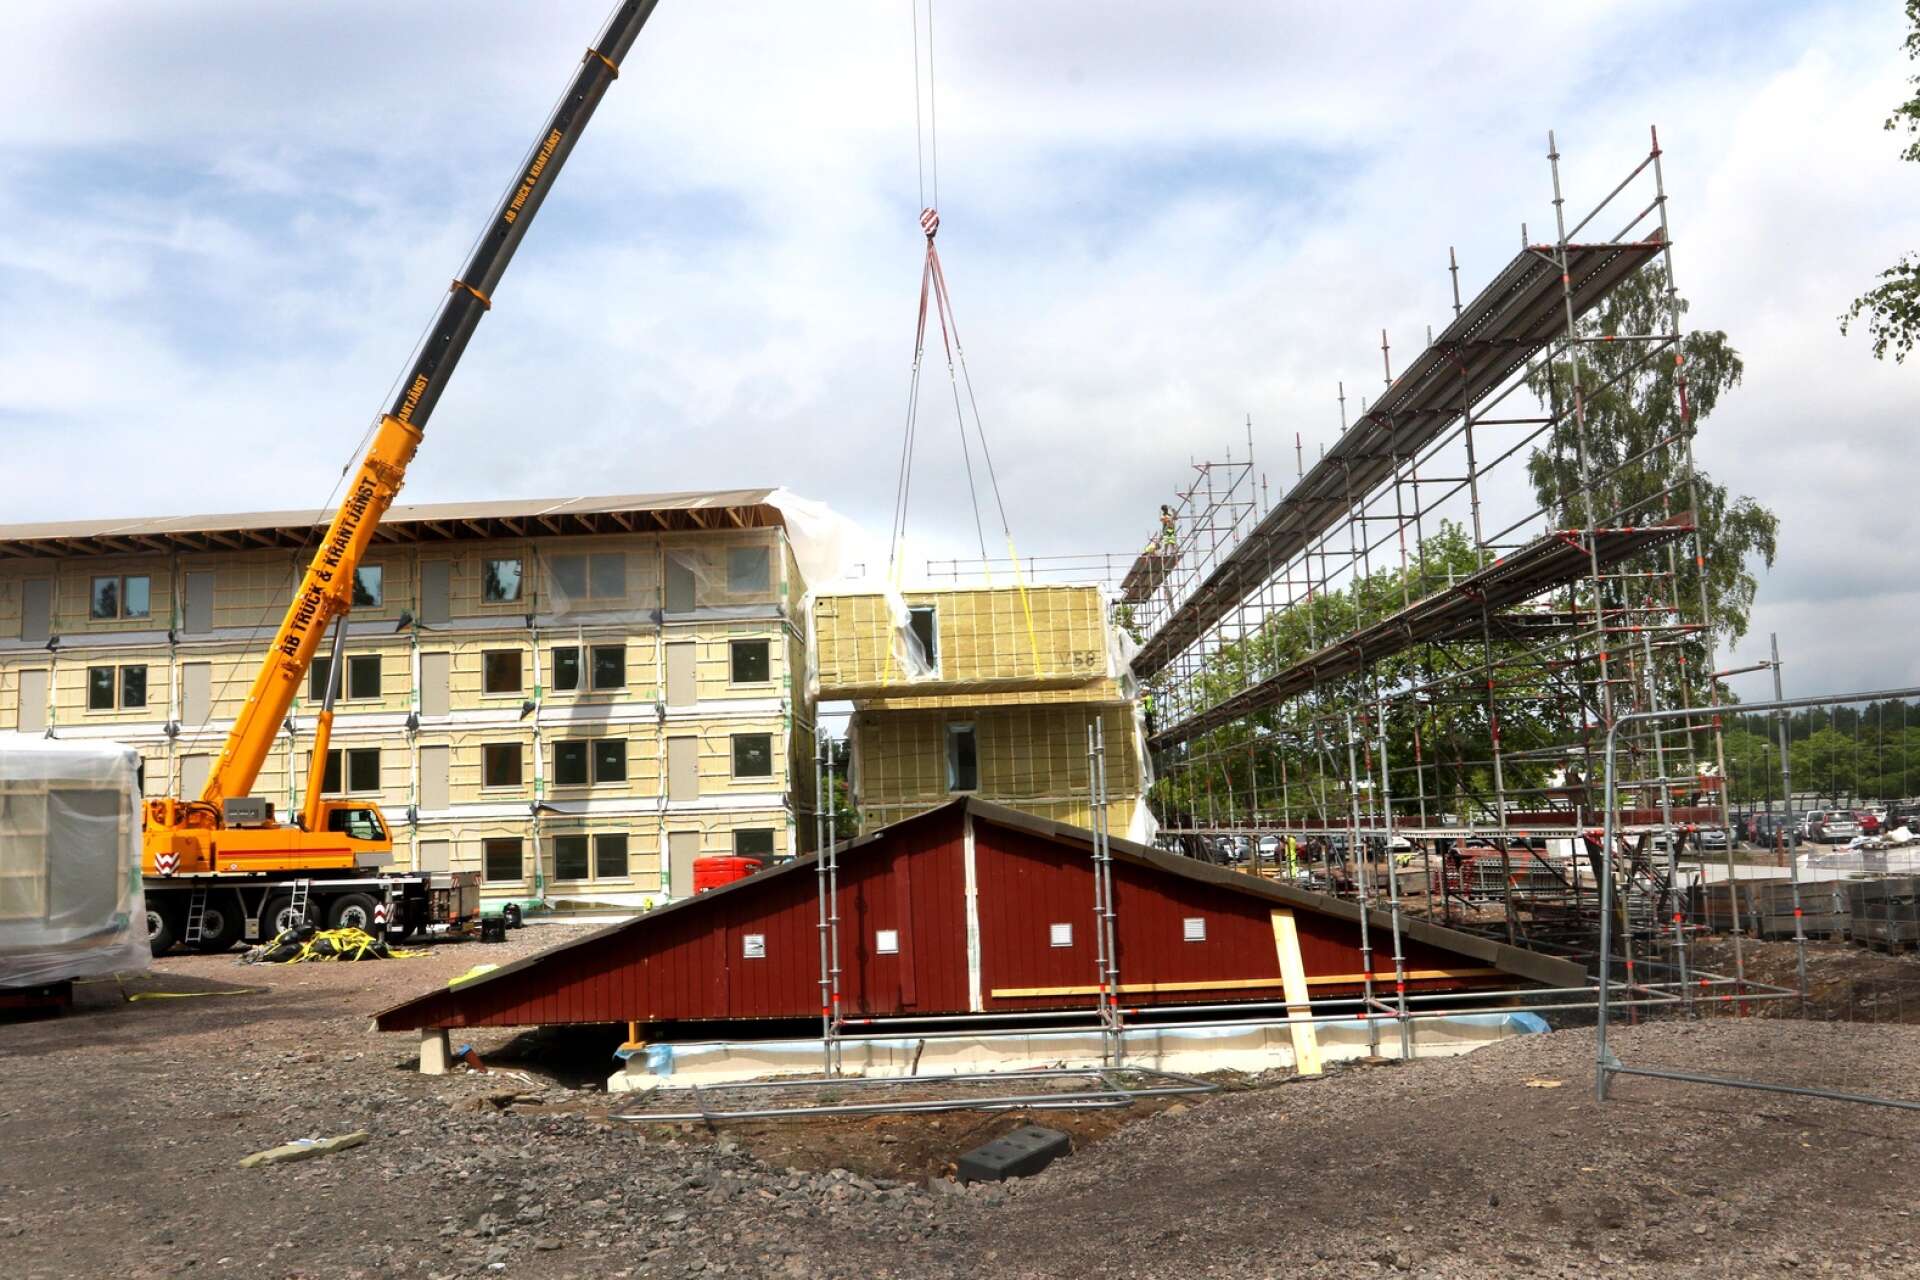 Byggandet av bostäder har kommit igång i Mariestad, men kommunen behöver hjälp, säger Klas Ericson. Den nationelle samordnaren hoppas att även grannkommunerna hjälper till.